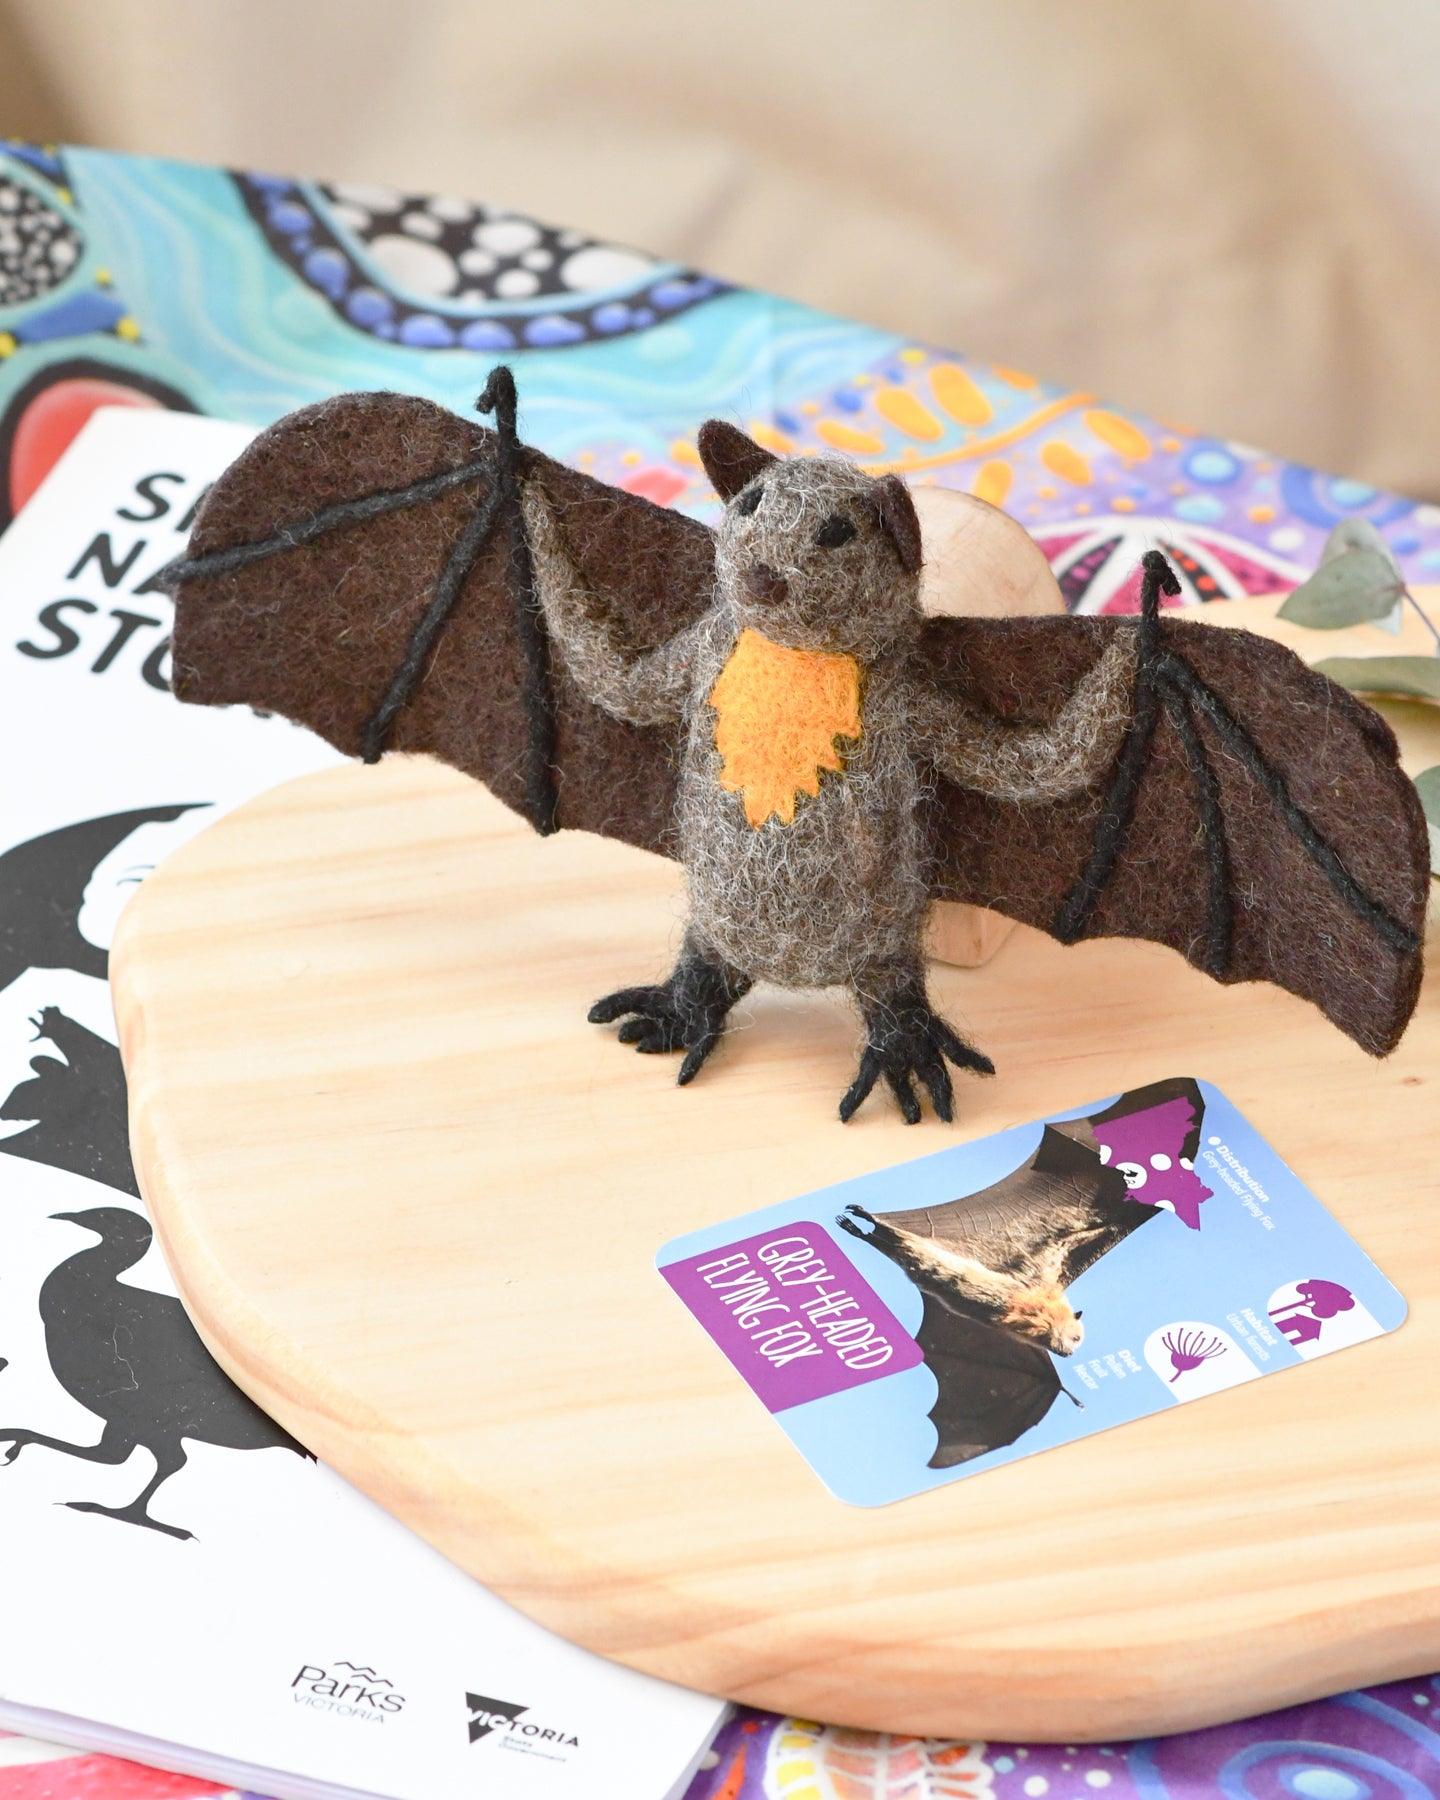 Felt Australian Toy - Grey-Headed Flying Fox - Parks Victoria Nature Mascots - Tara Treasures